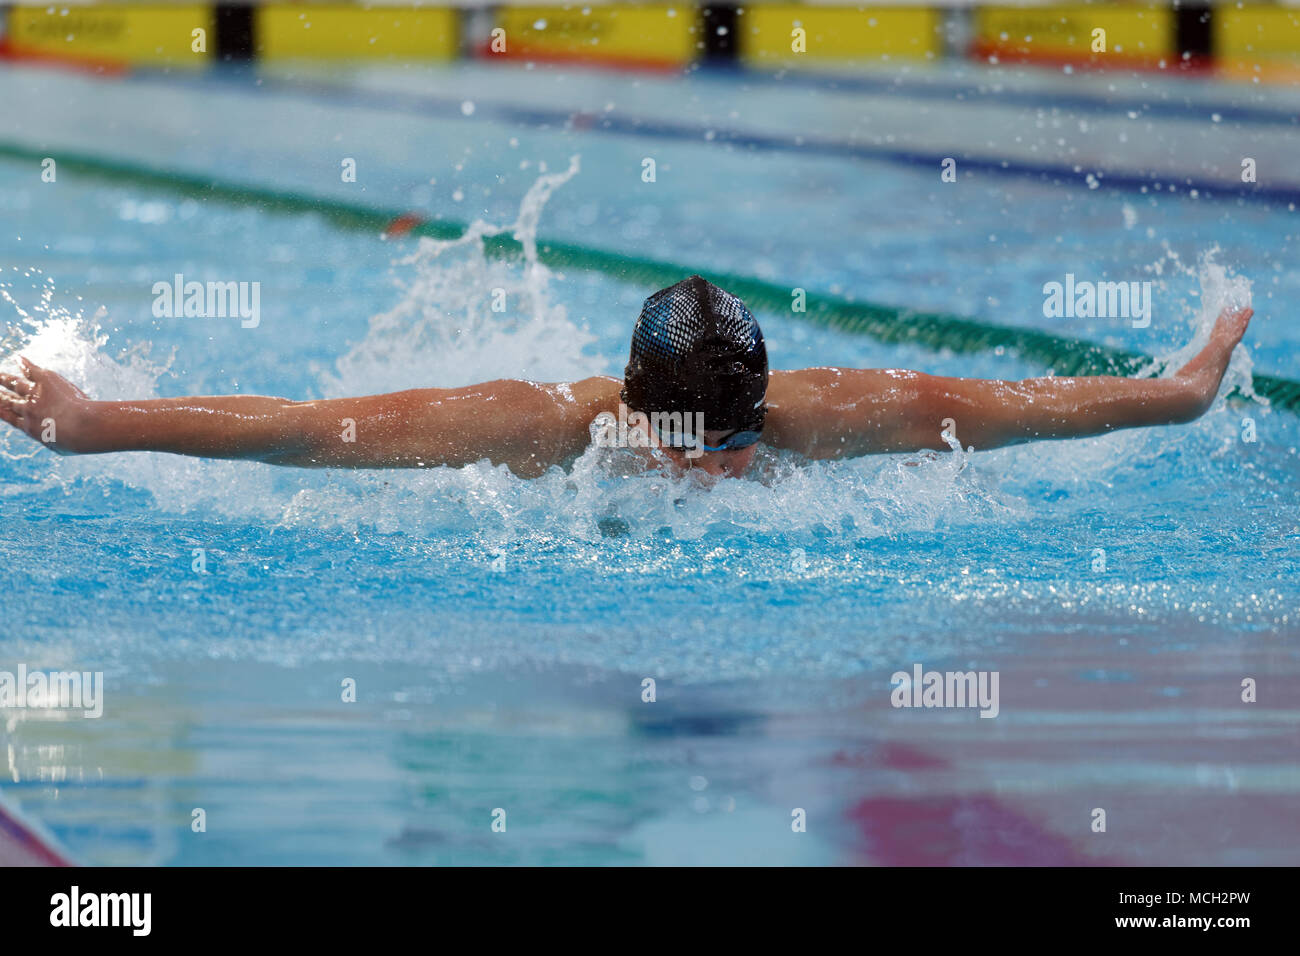 San Petersburgo, Rusia - Abril 11, 2018: Los hombres compiten en 100m mariposa natación durante las competiciones de natación All-Russian Merry Dolphin. El competitio Foto de stock